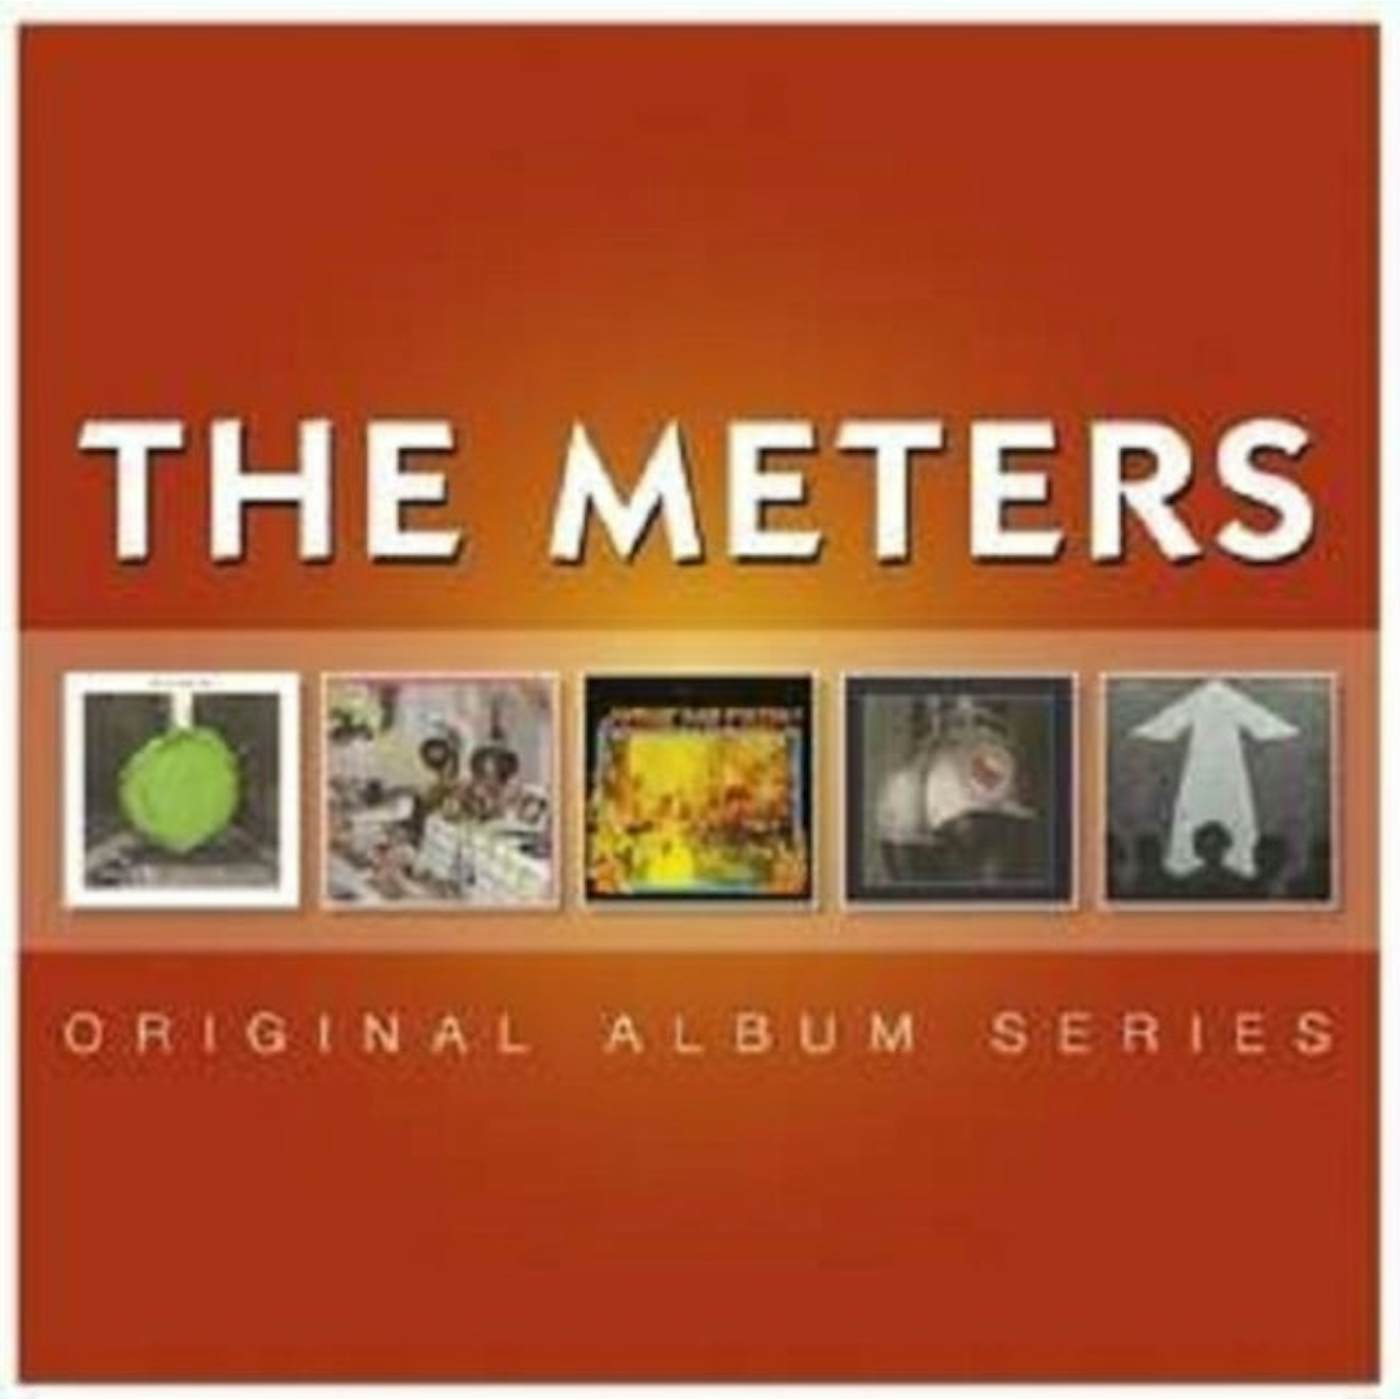 The Meters CD - Original Album Series